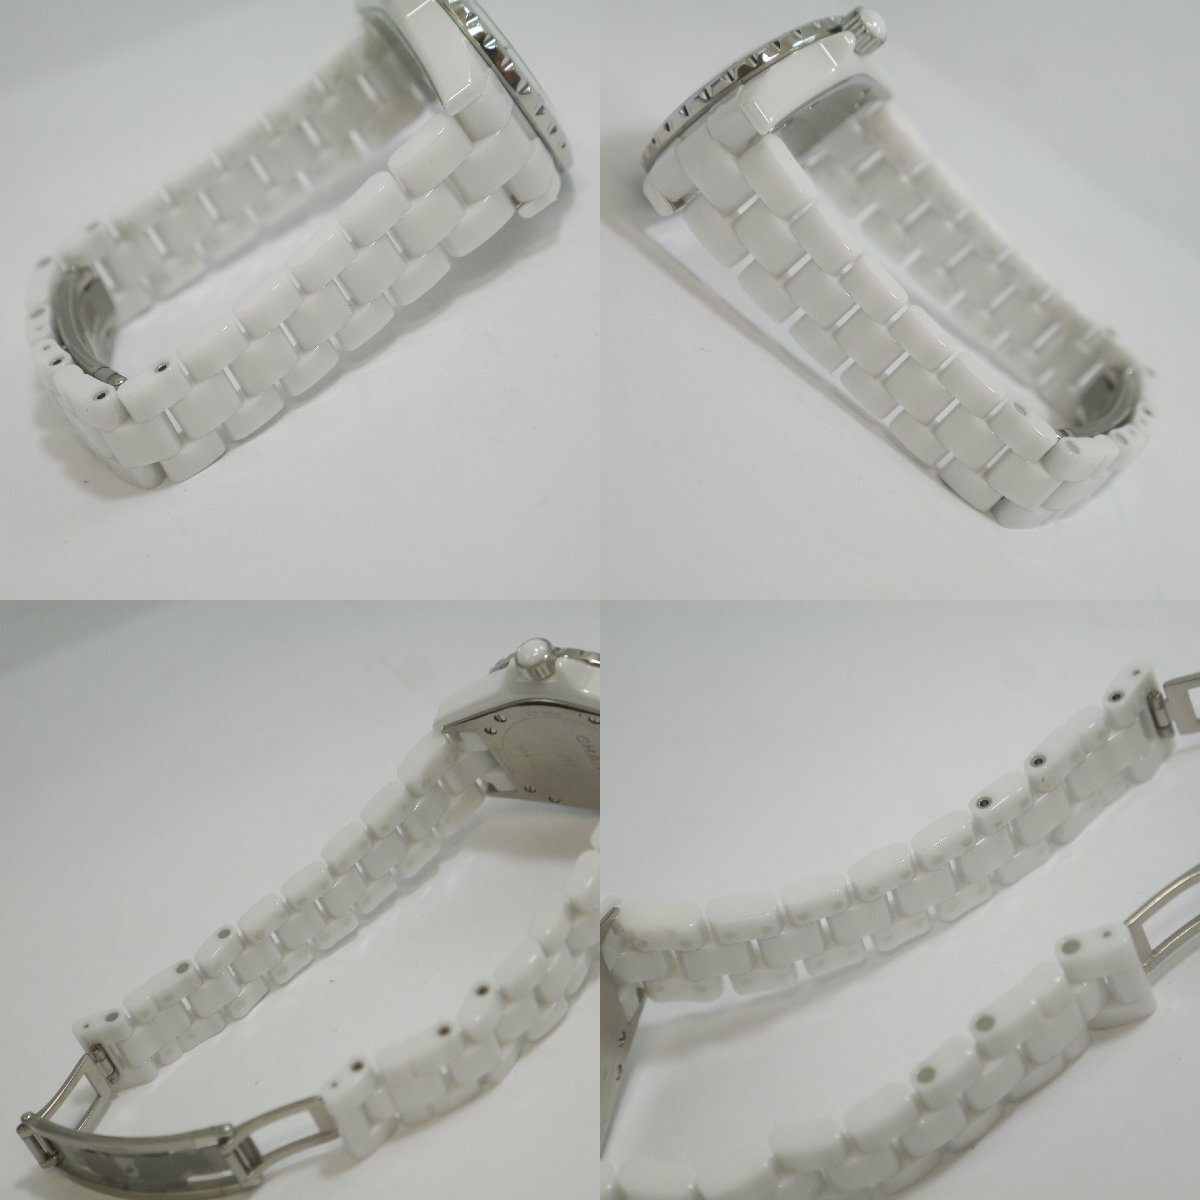 送料無料 USED美品・保管品 CHANEL シャネル J12 クオーツ 腕時計 3針 デイト H0968 ホワイト セラミック レディース ケース/箱付 動作品の画像7